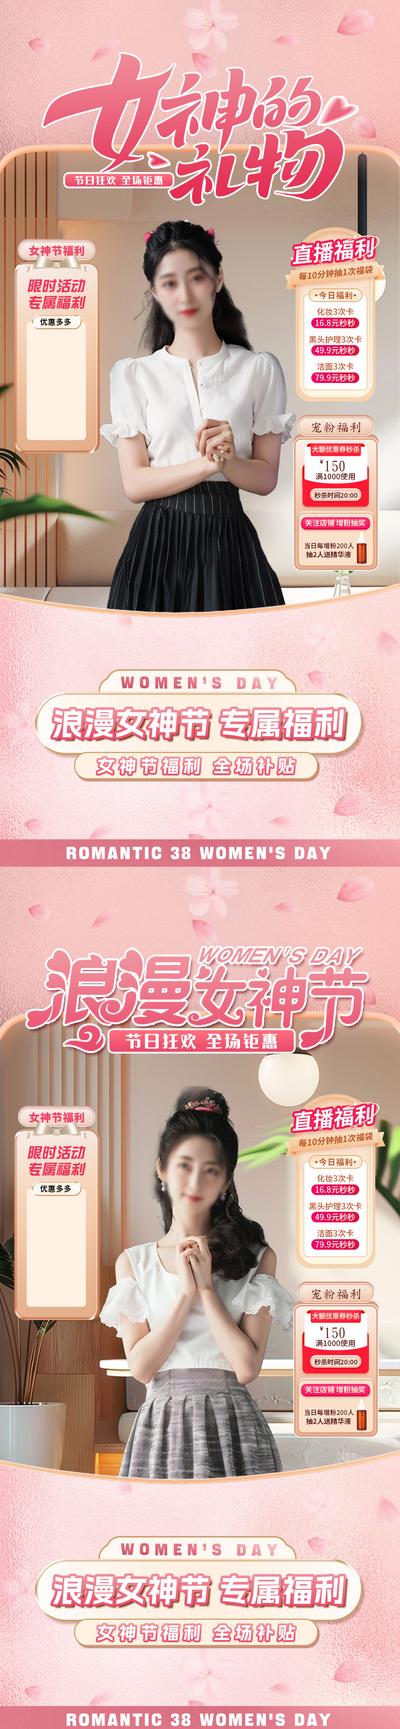 南门网 海报 直播间 贴片  公历节日 妇女节 女神节 礼物  女性 化妆品  